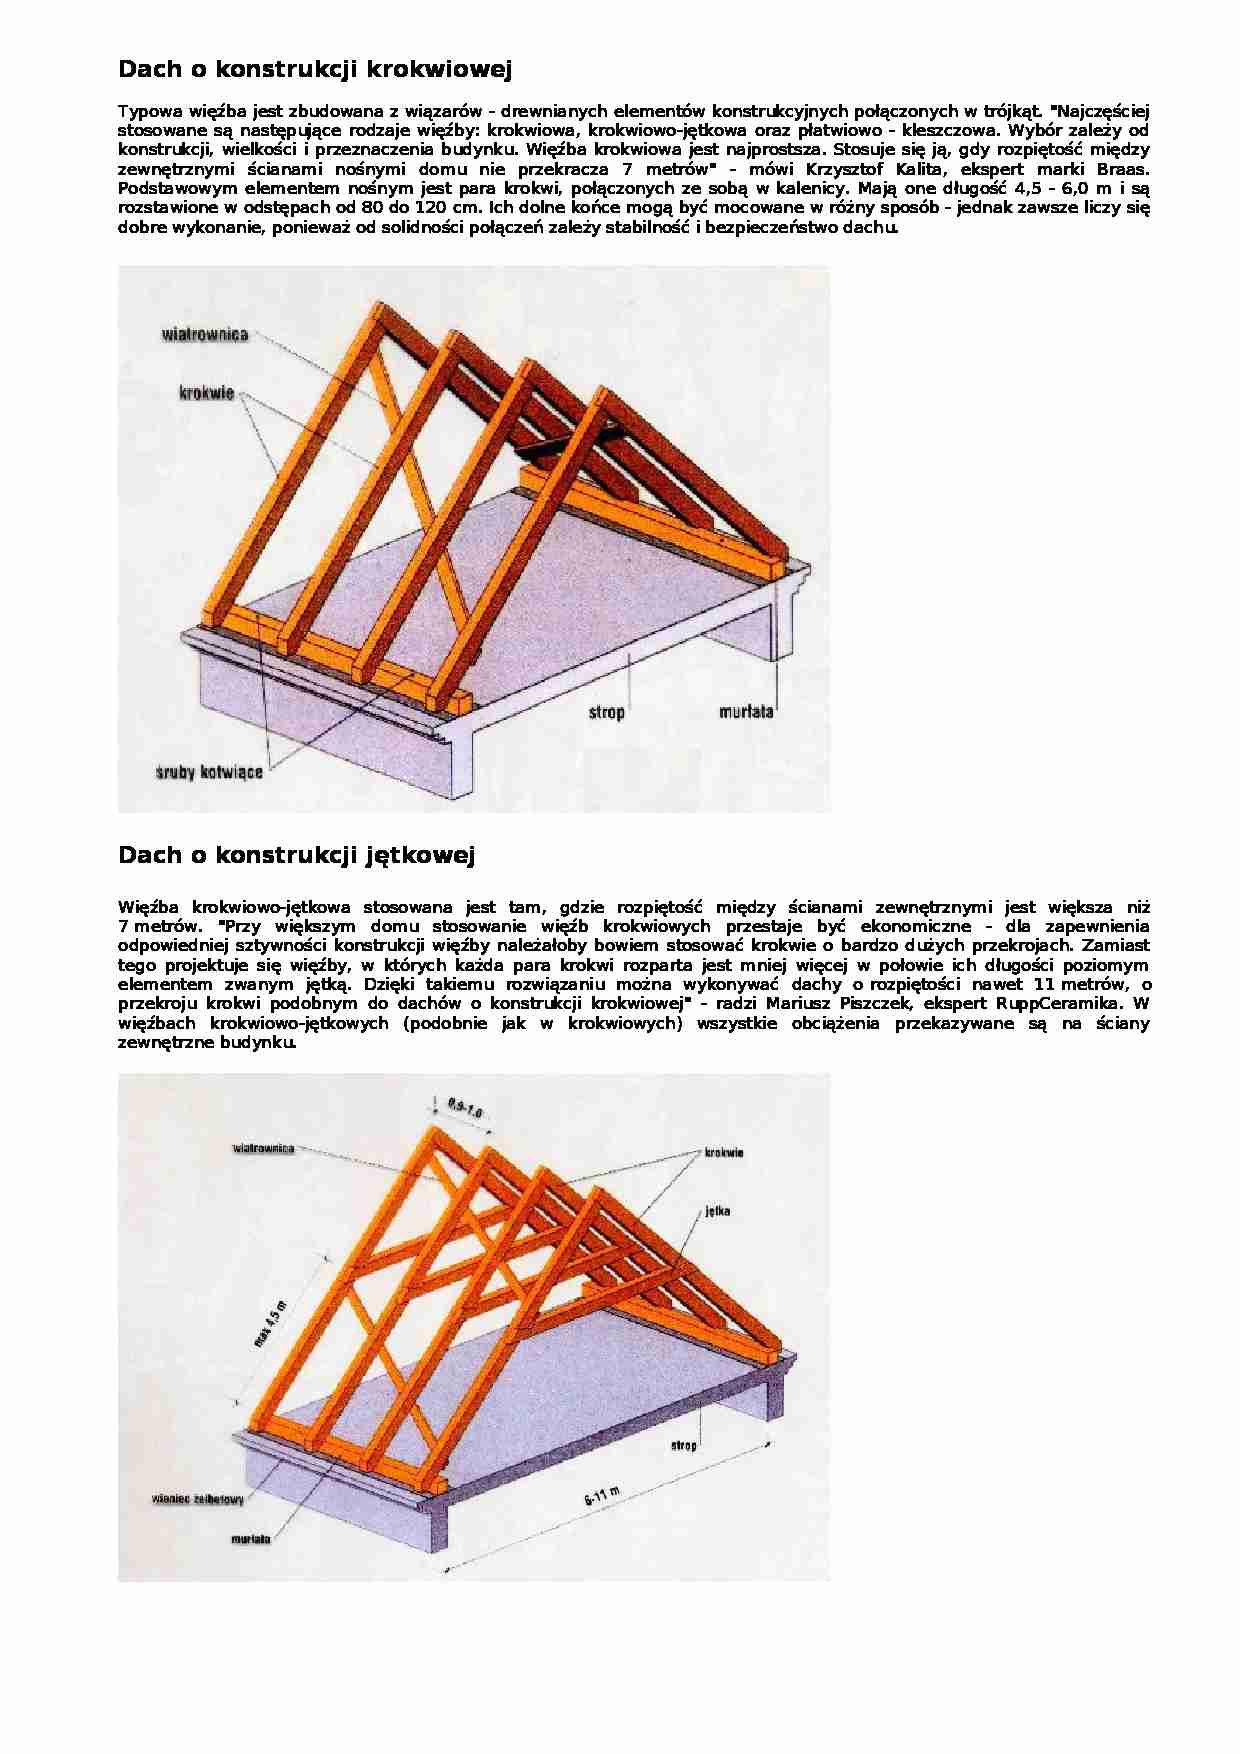 Dachy - konstrukcje - omówienie - strona 1